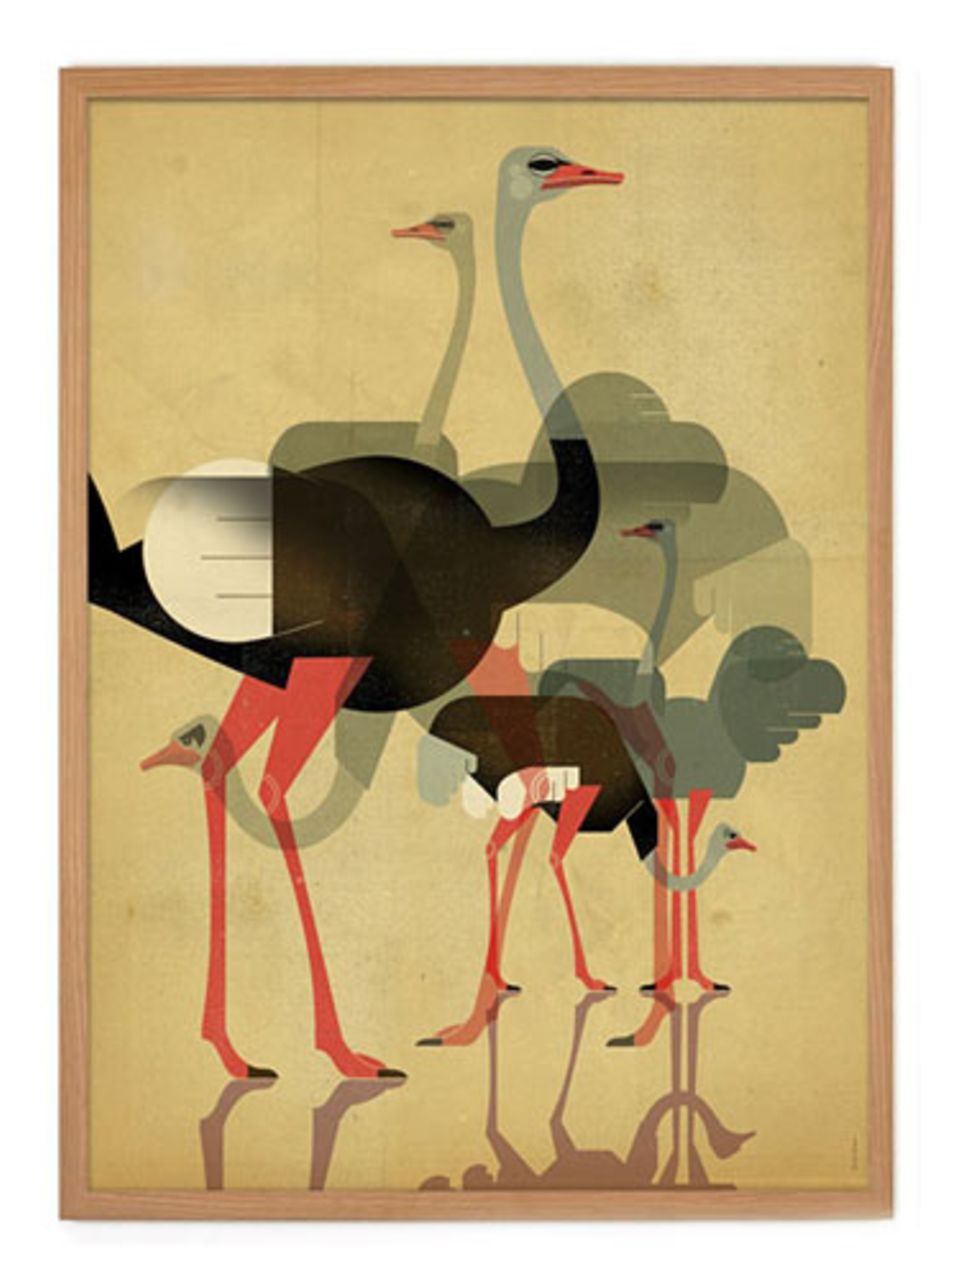 Tiermotive müssen nicht immer niedlich aussehen - diese Strauße aus dem Human Empire Shop kommen sehr kunstvoll daher. "Ostriches Poster" von Dieter Braun, circa 20 Euro.